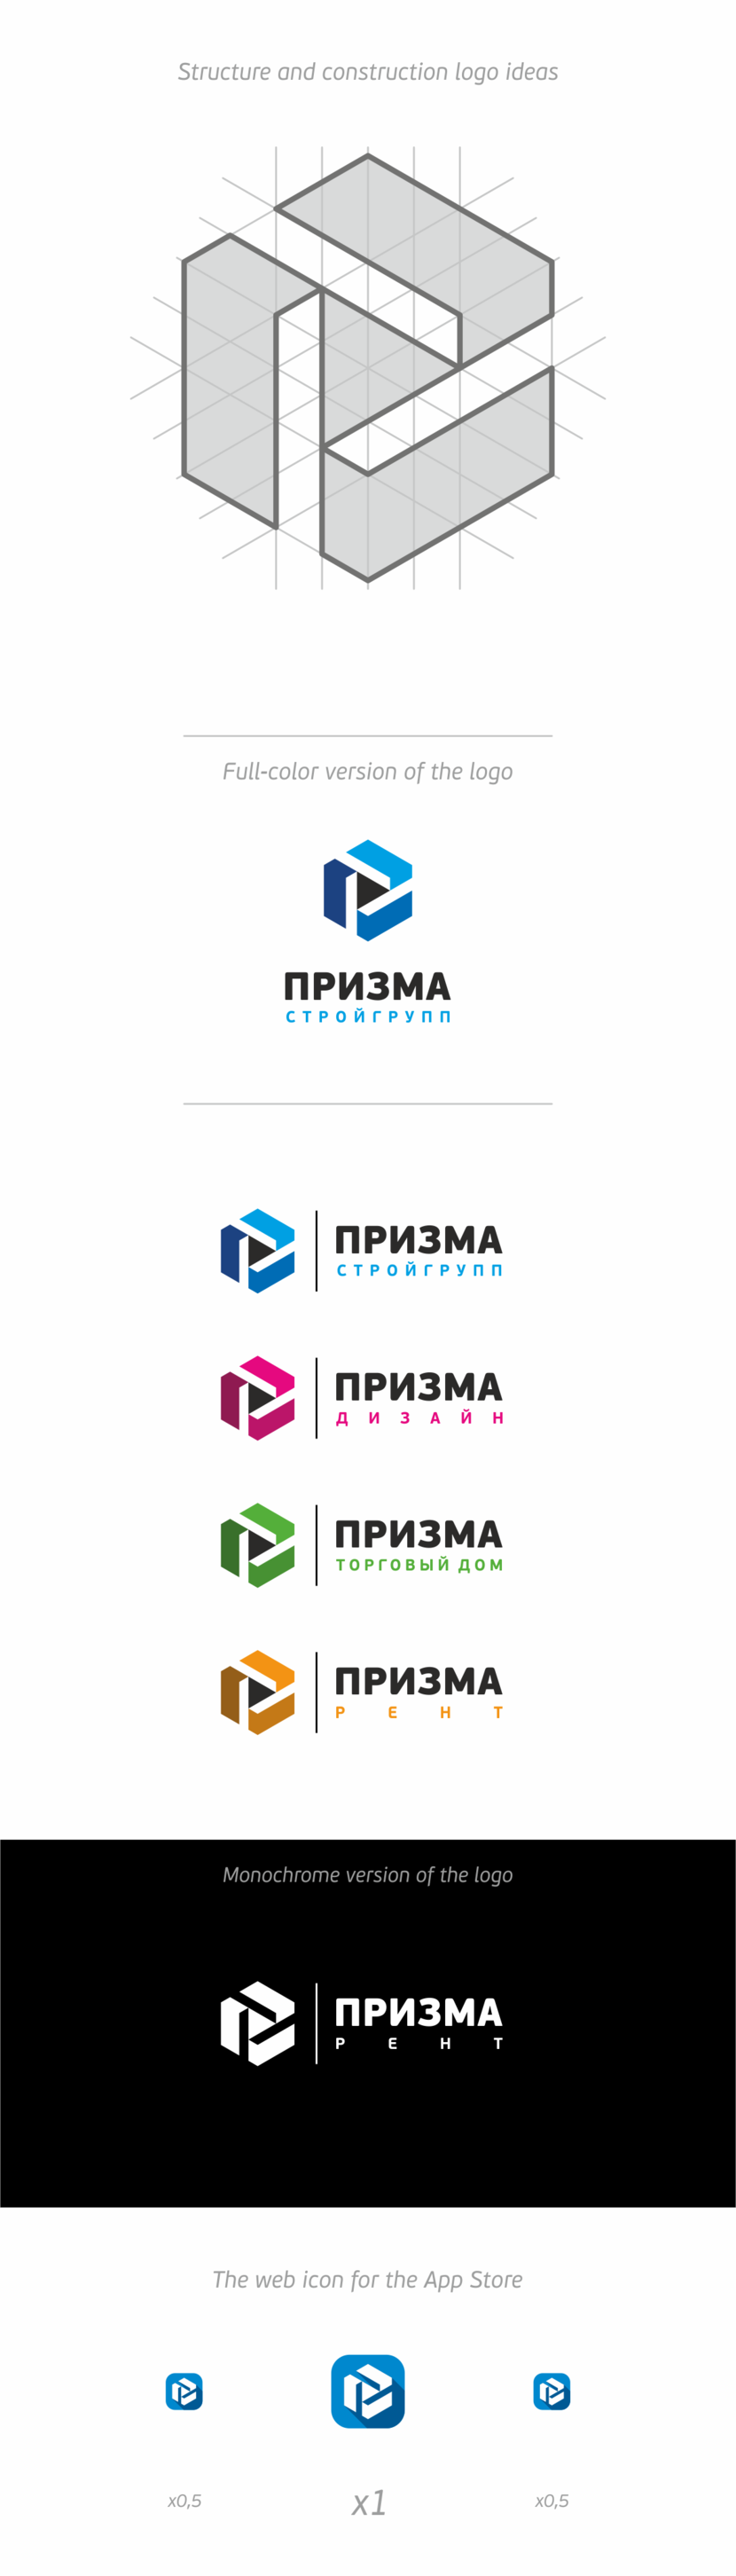 + некоторые корректировки) - Создание логотипа для группы строительных компаний